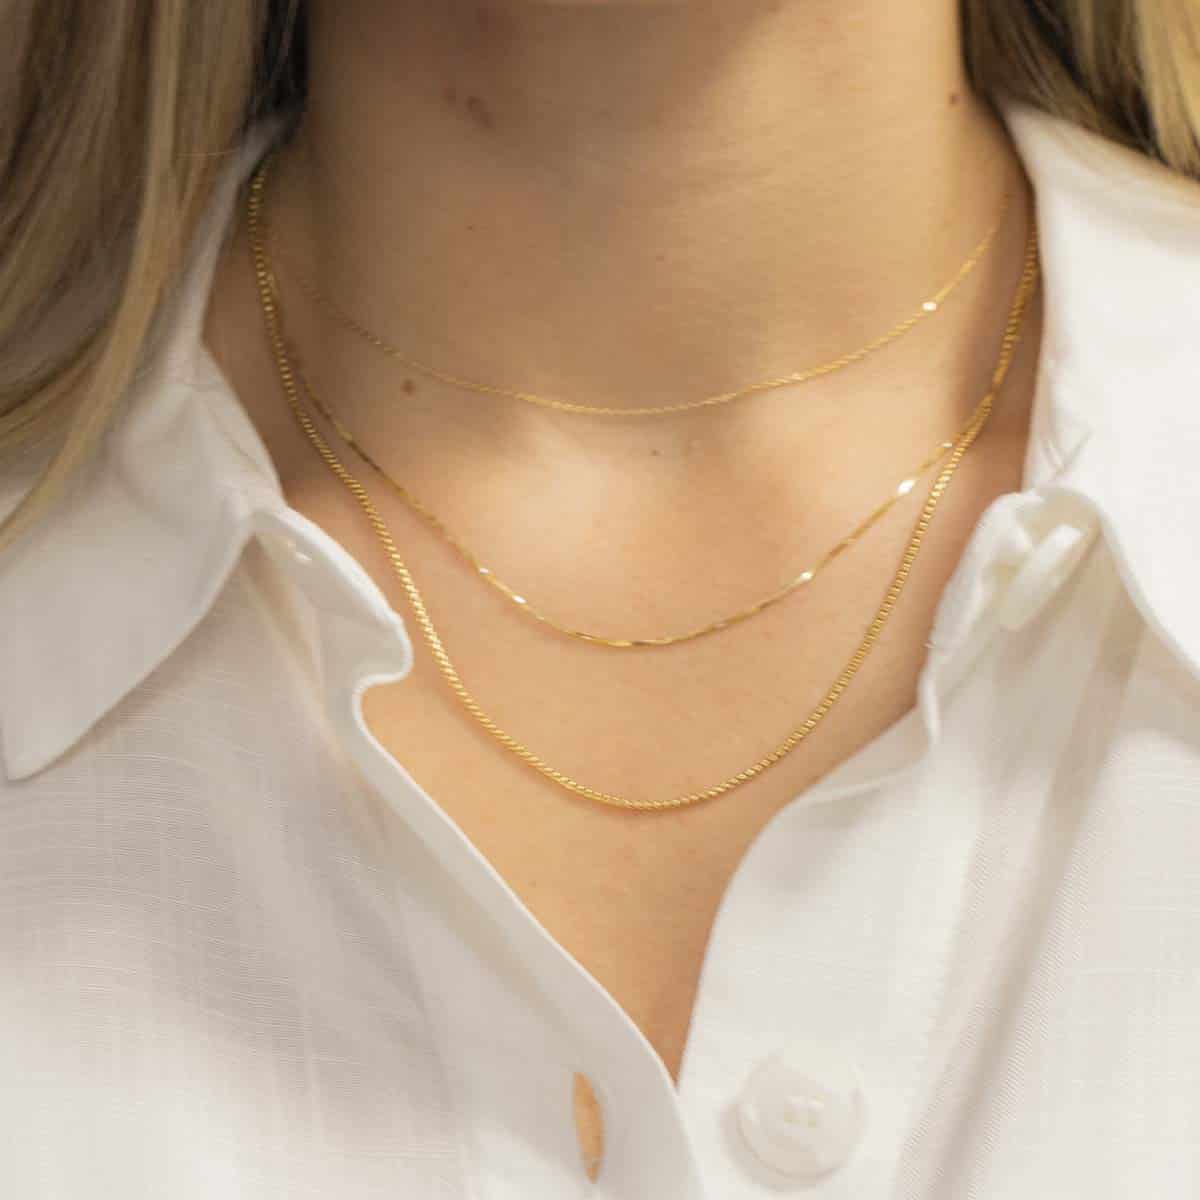 buy women’s necklaces online